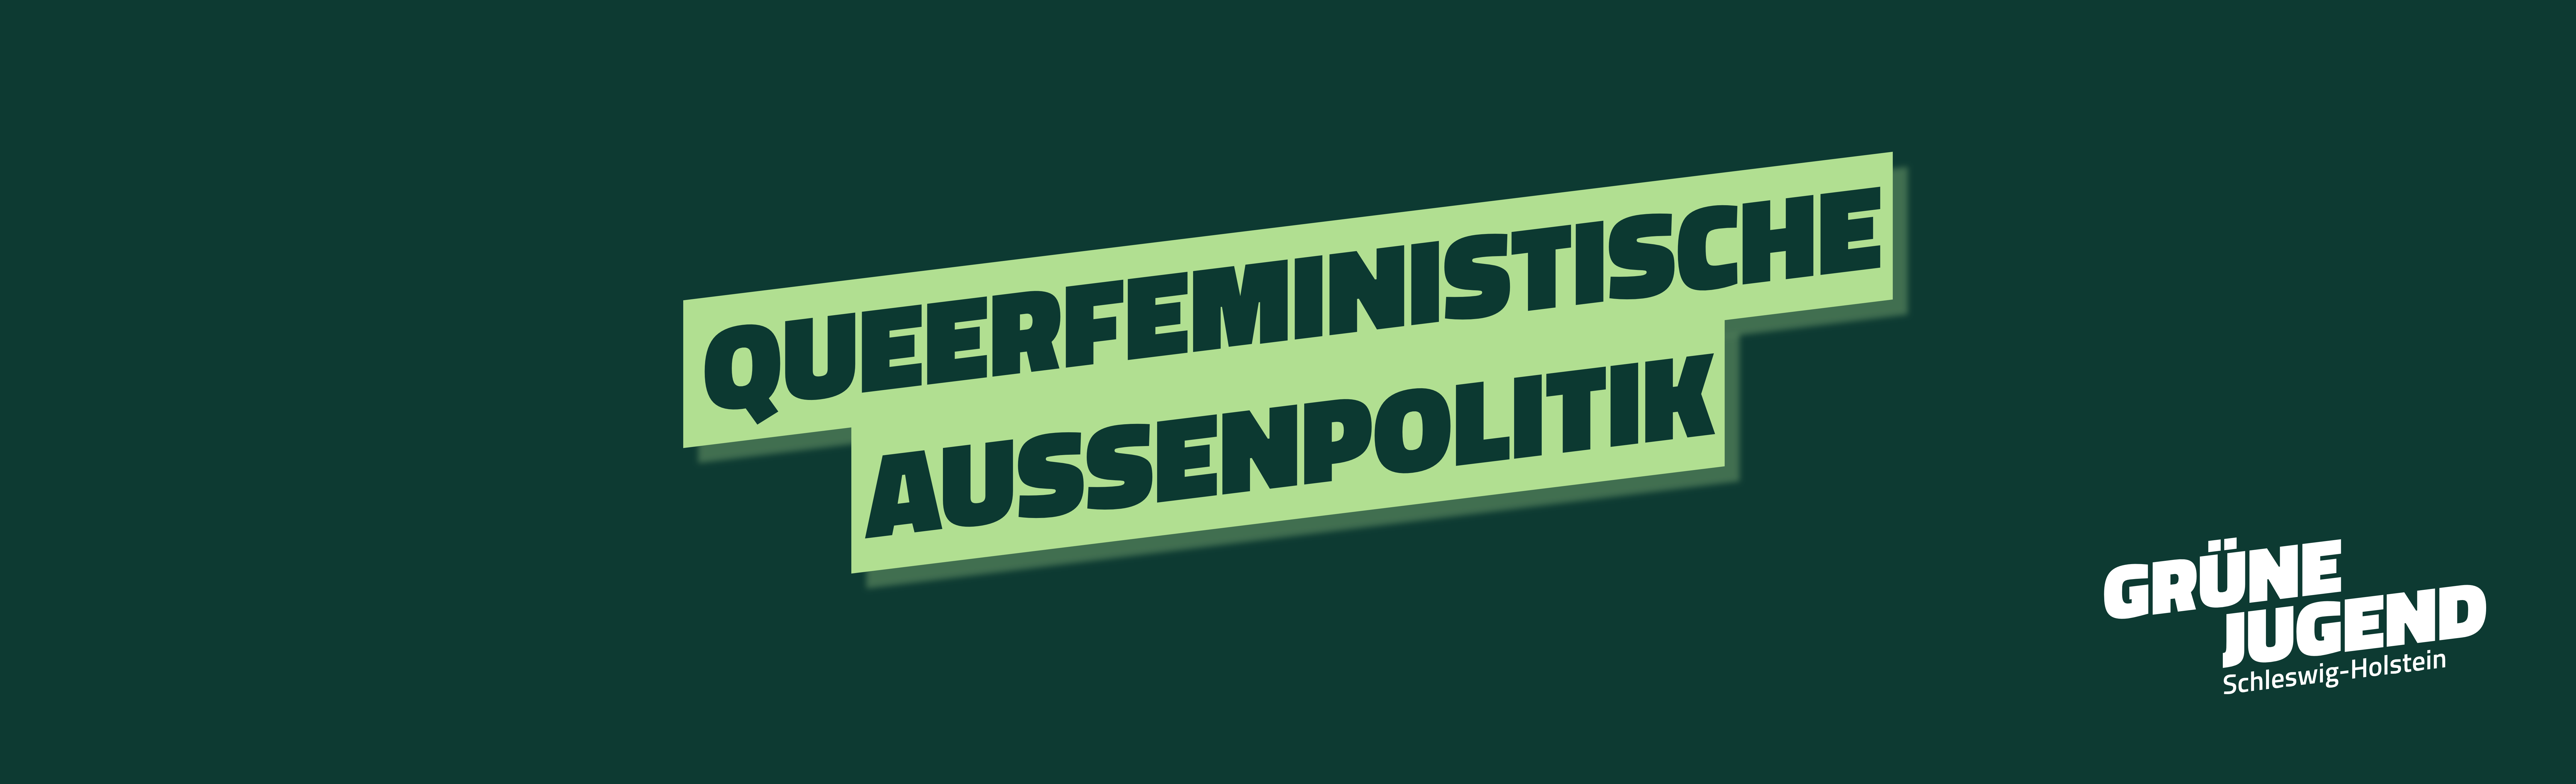 Leitantrag: Queerfeministische Außenpolitik – die Verteidigung von Menschenrechten, Gerechtigkeit und Klimaschutz